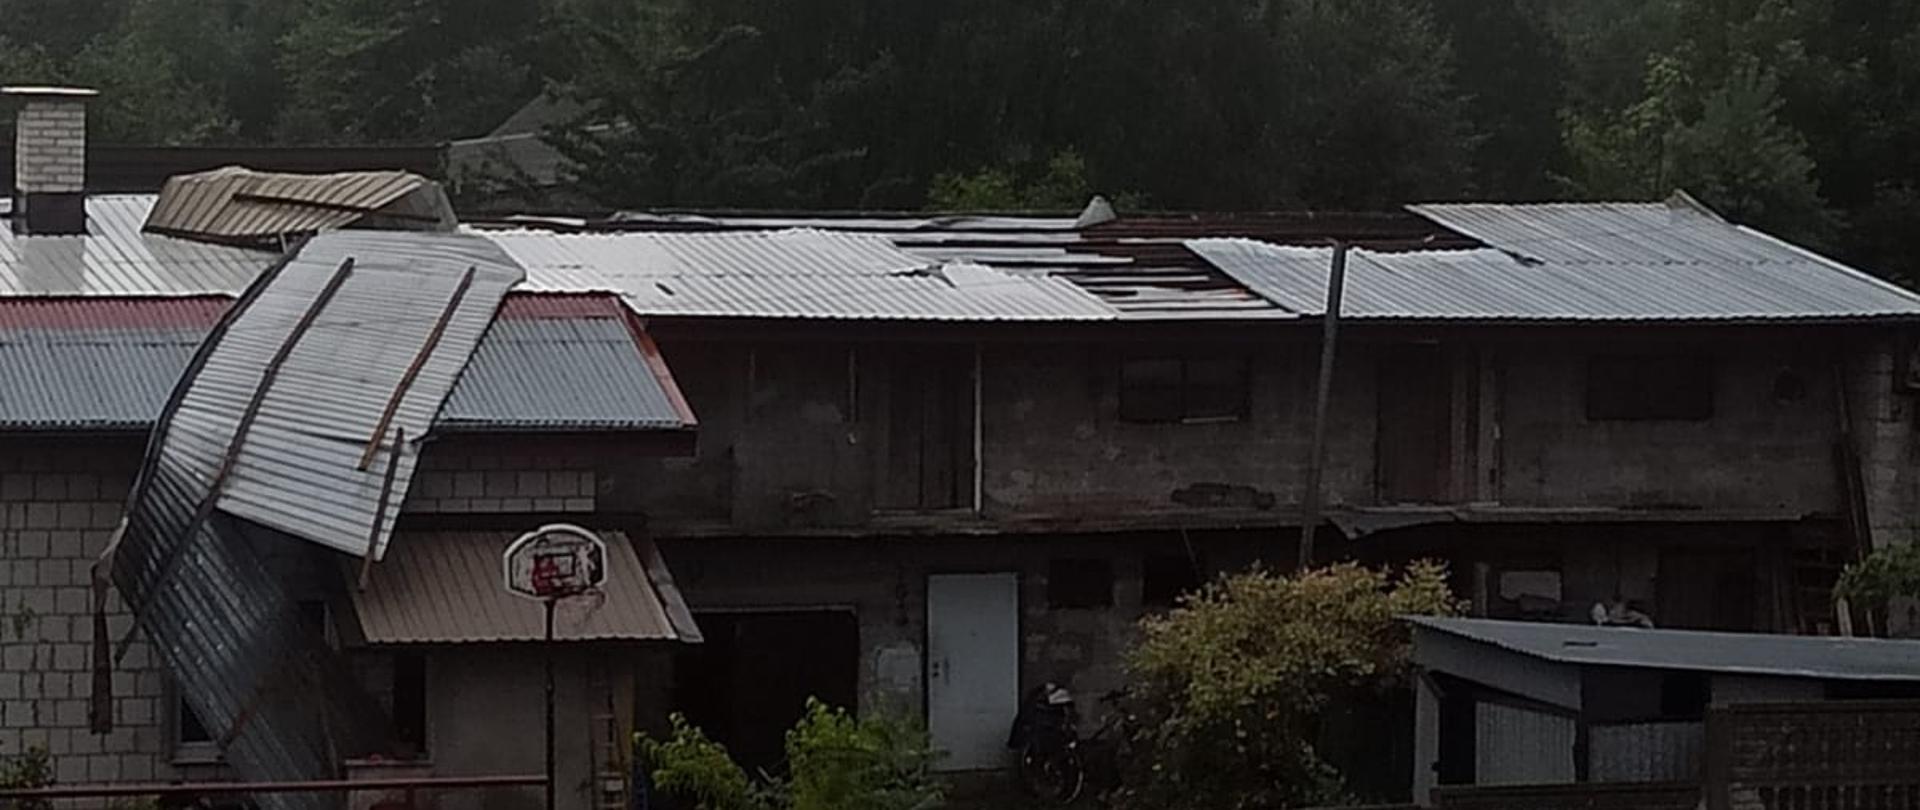 Na zdjęciu widać uszkodzony dach budynku gospodarczego. Oderwana blacha zwisa niebezpiecznie z dachu. W tle widać las.